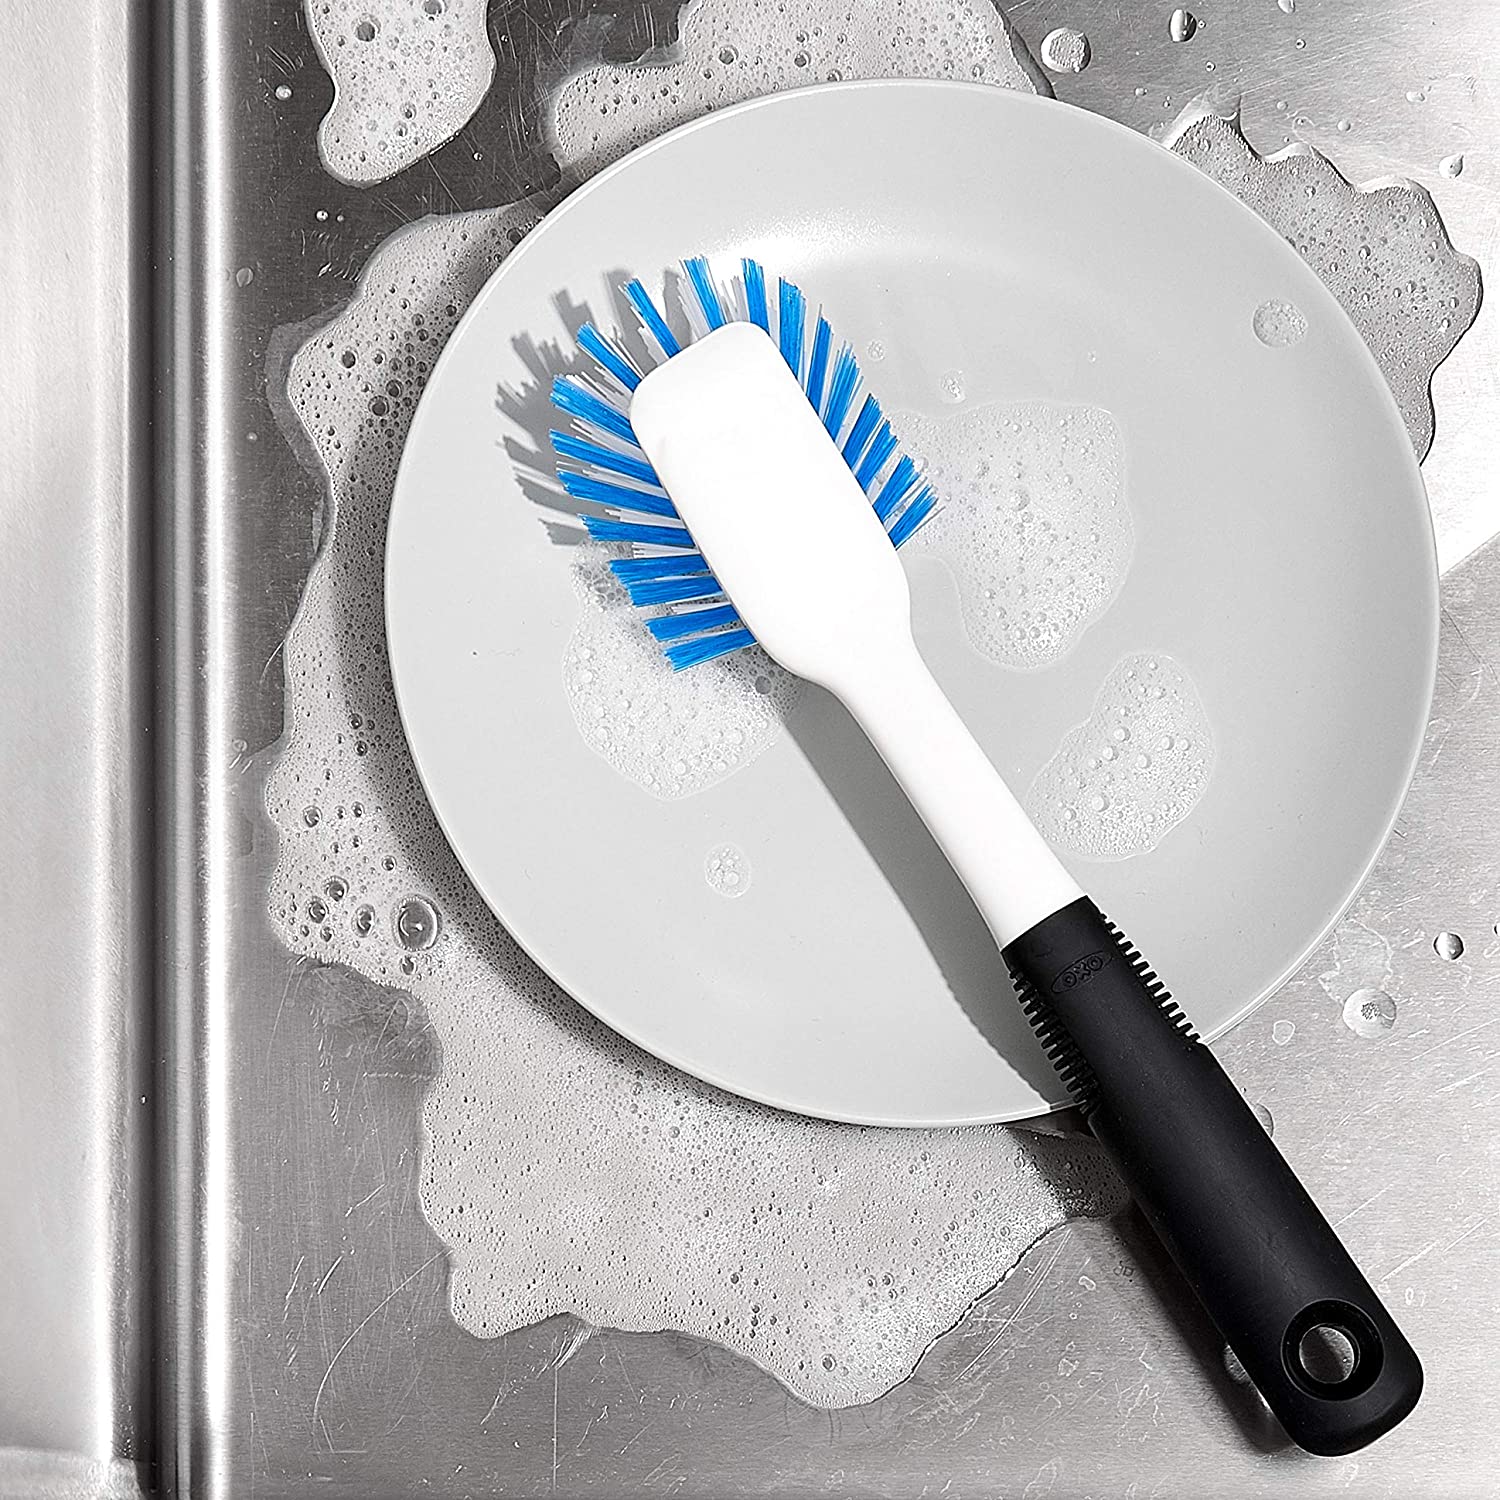 Dish scrubbing brush